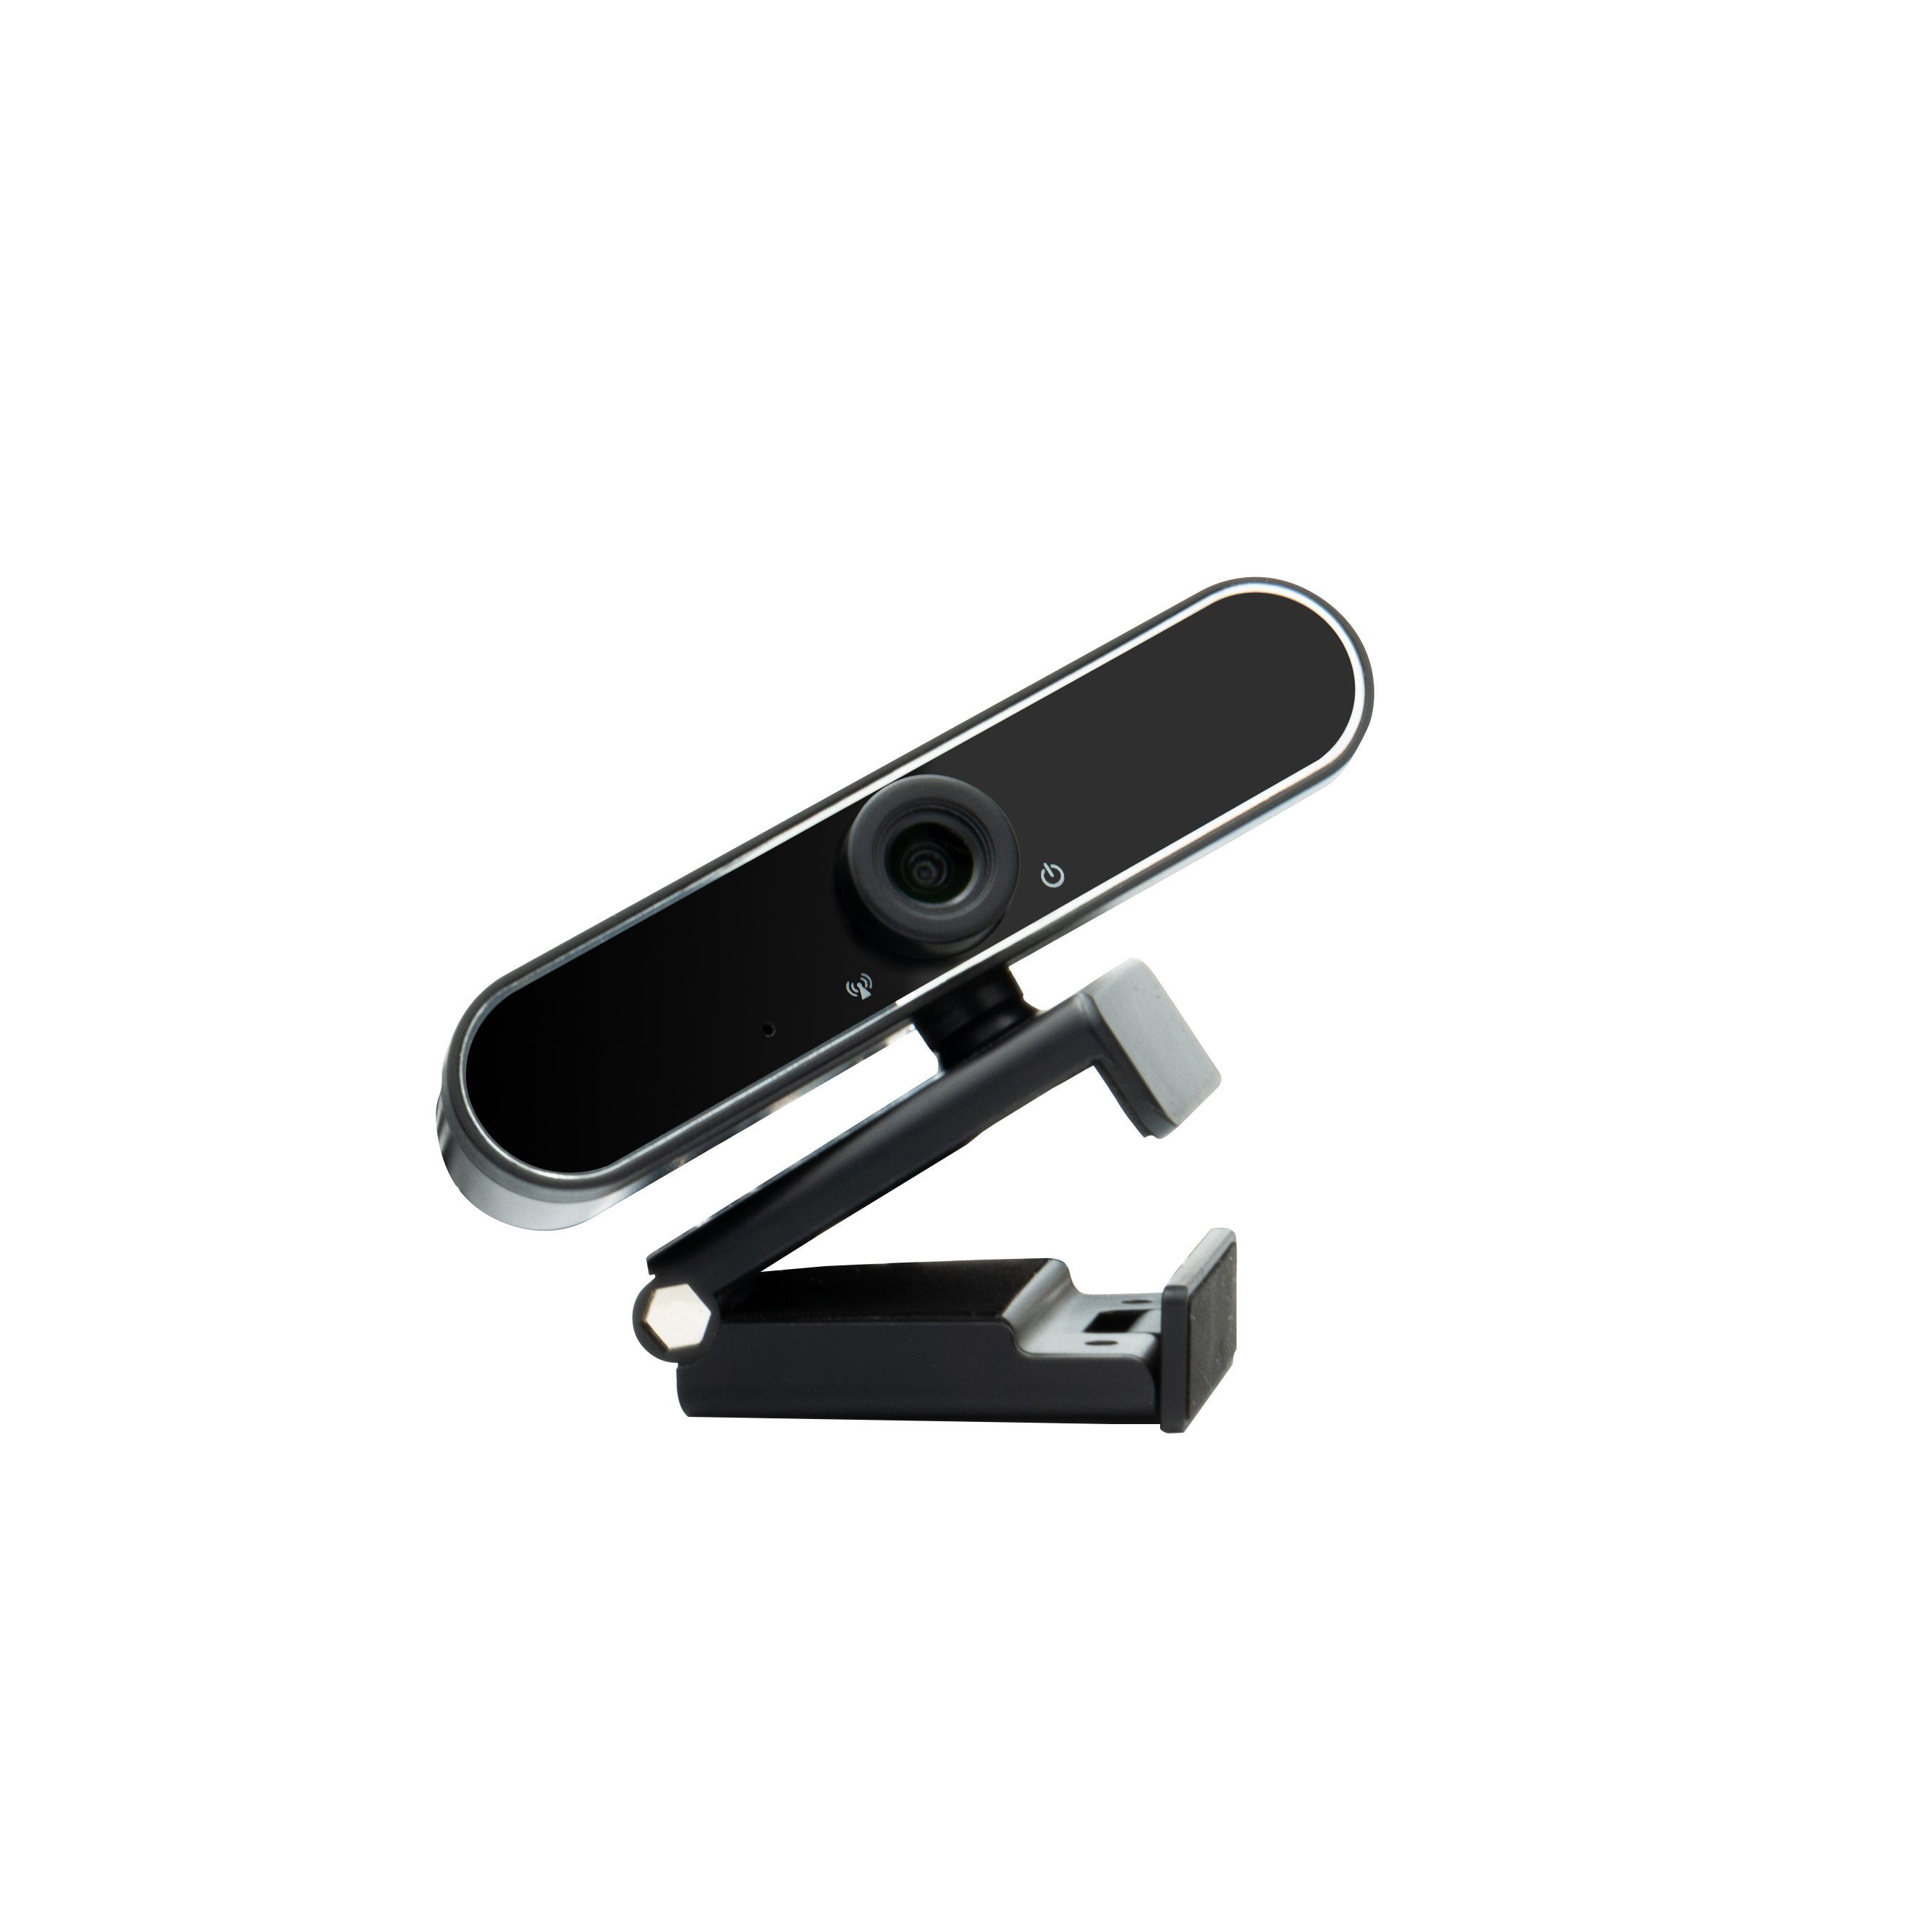 Headset Hyrican schwarz Startup ST-SM50 Collection Streamer Studio DW1 Mikrofon + + kabelgebunden, + Eingabegeräte-Set, Striker ST-GH530 USB, + Webcam